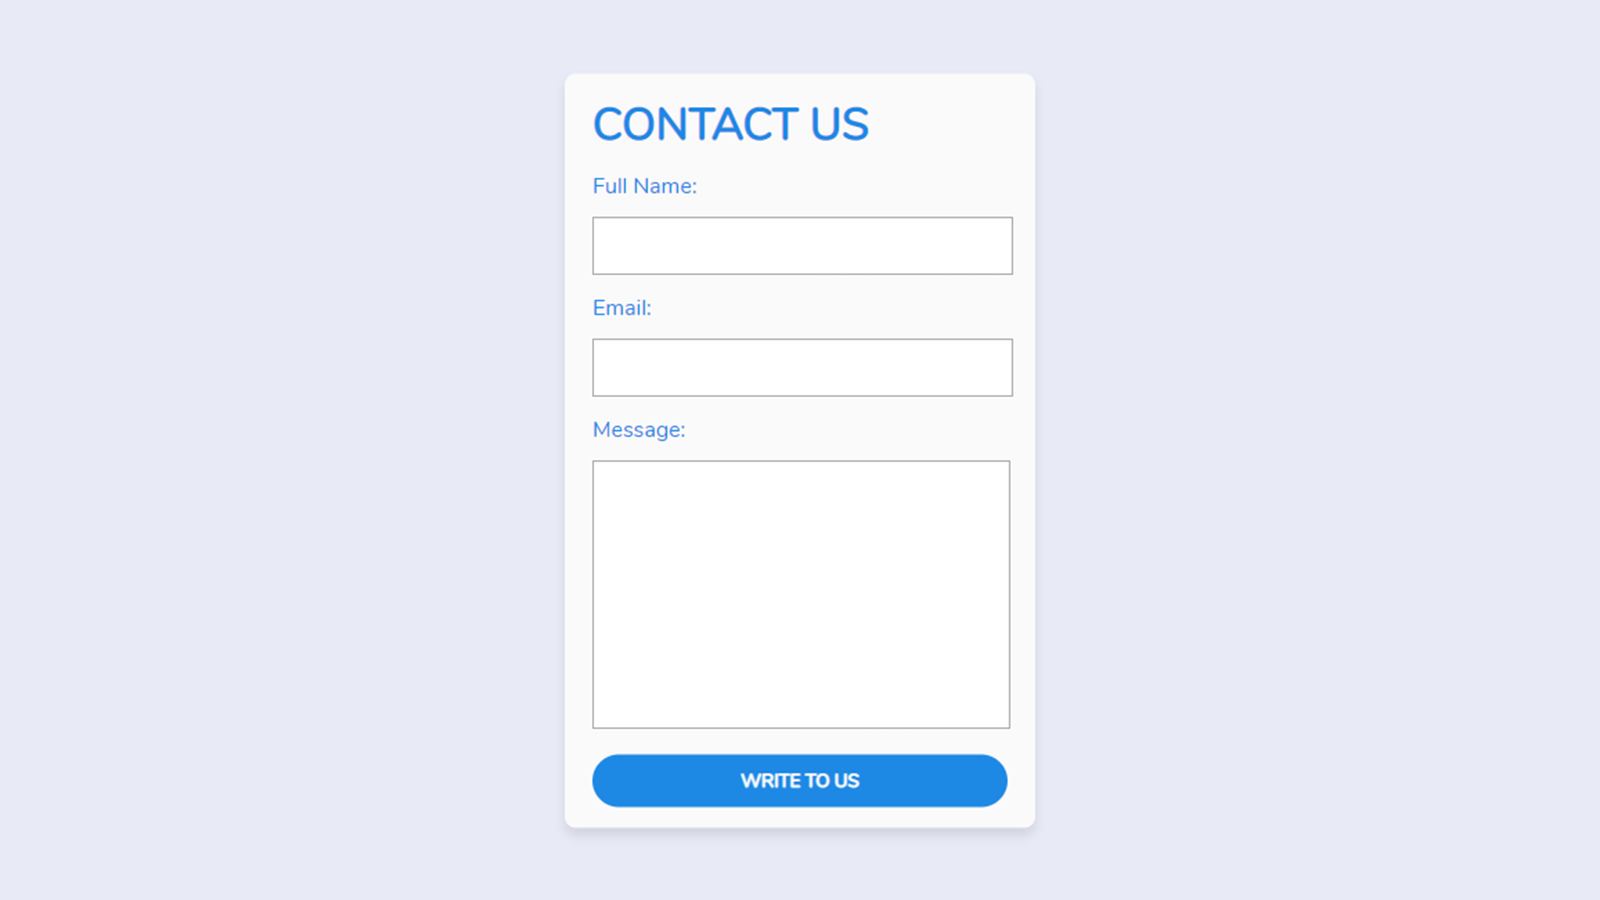 Форма связи html. Контакты CSS. Contact form. Contact us form. Contact us CSS html.